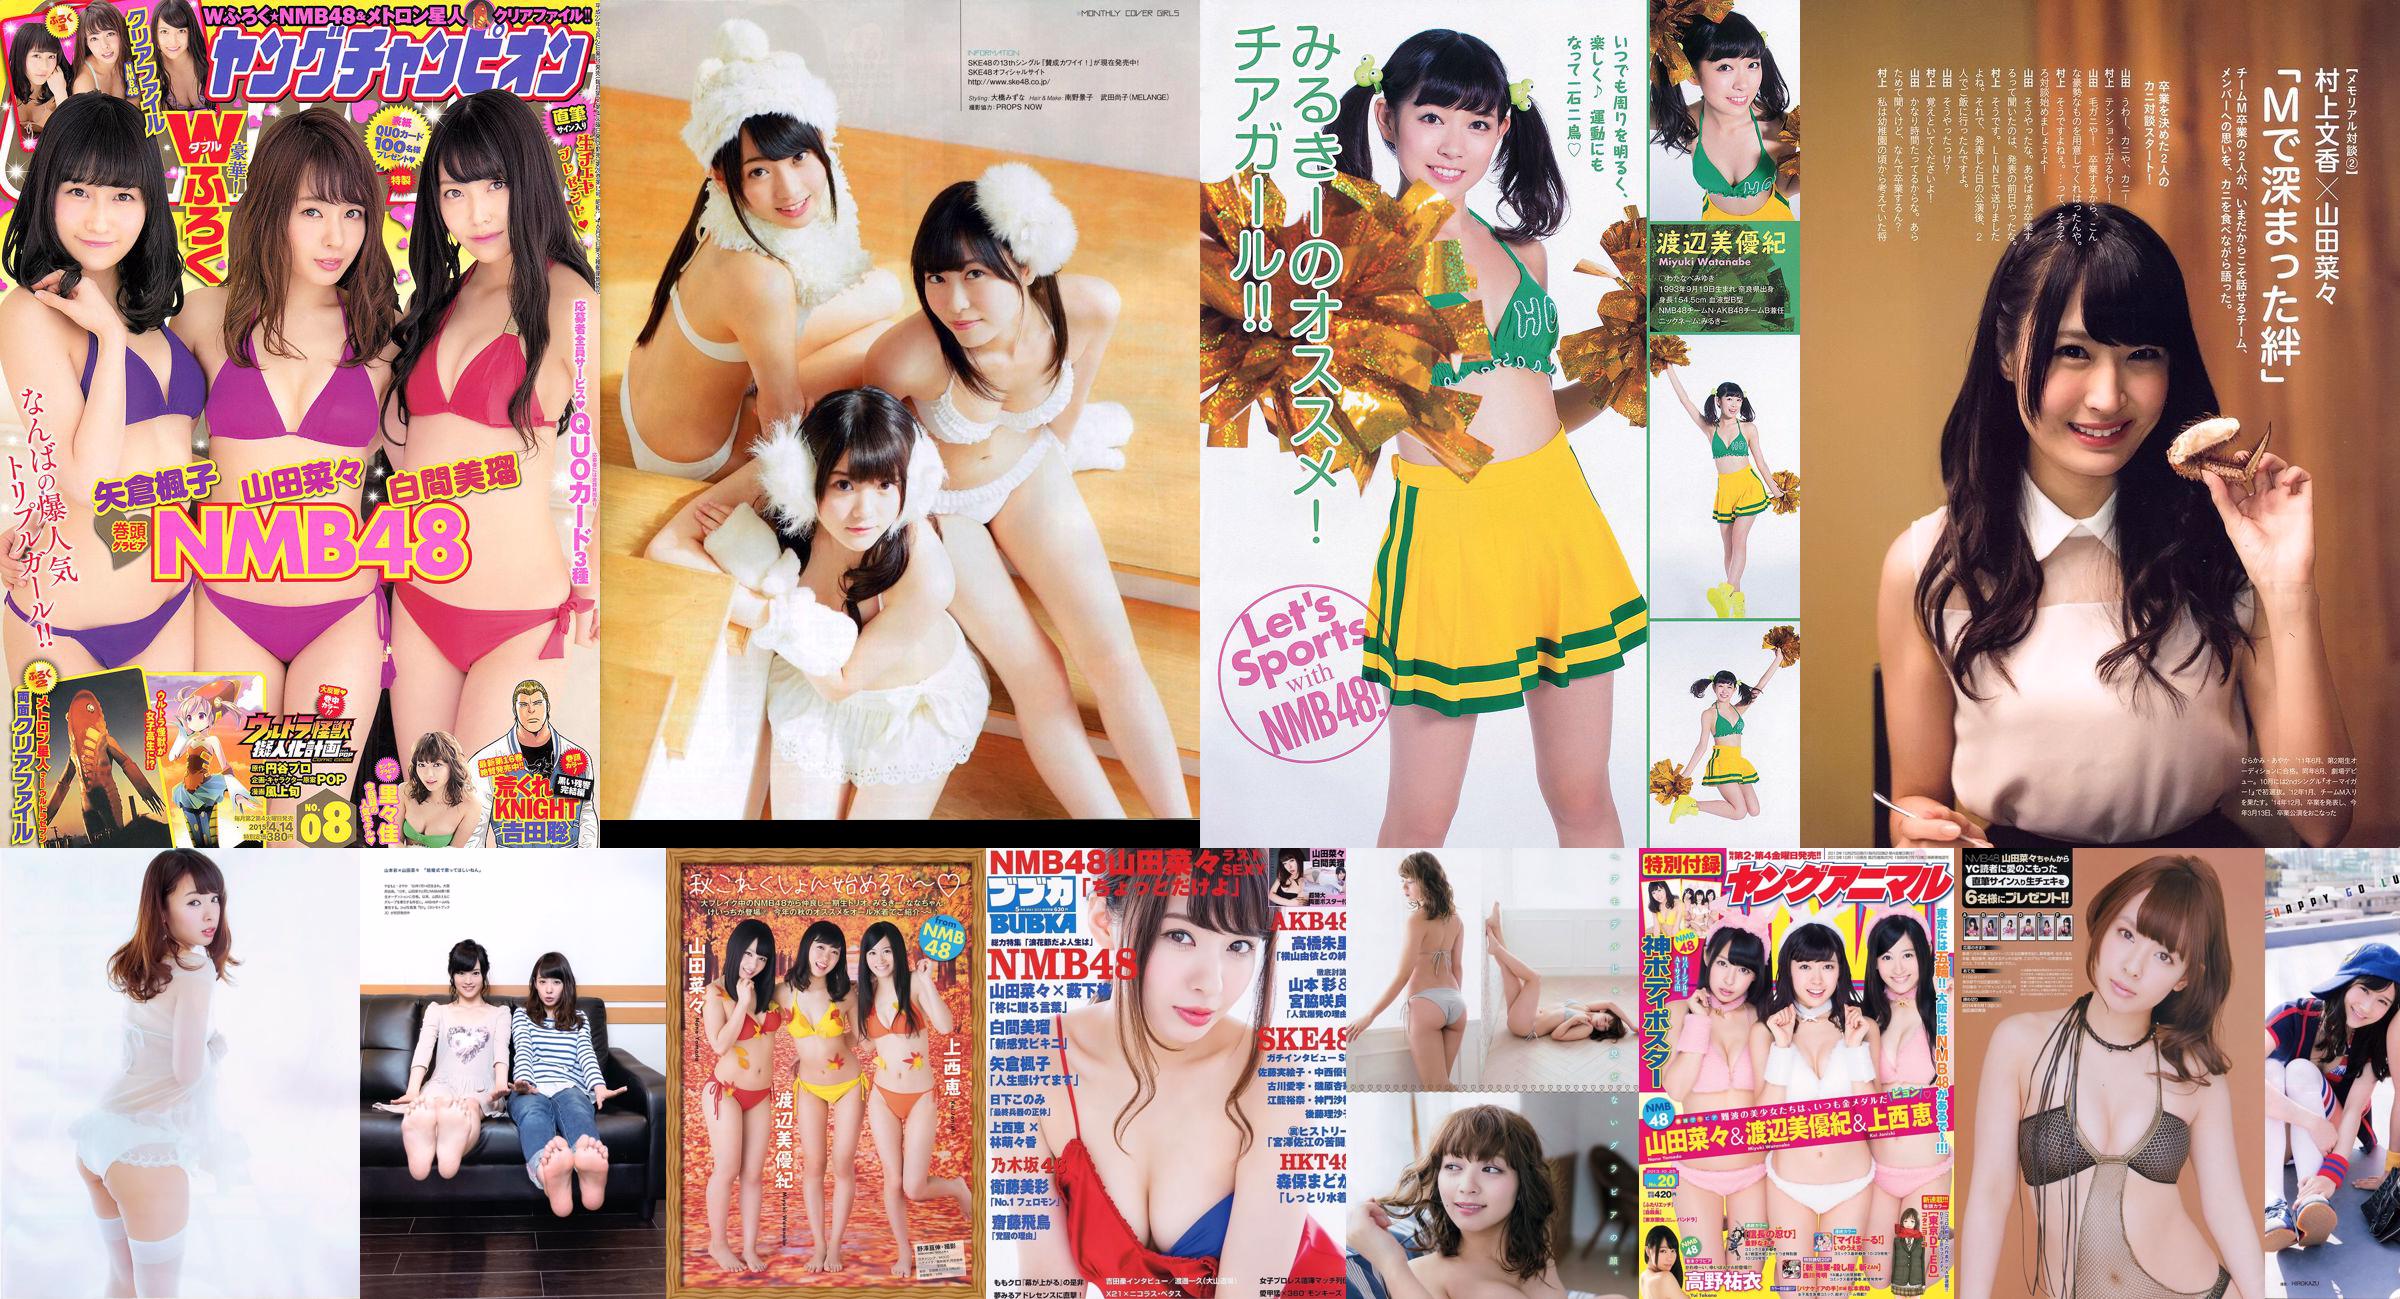 [BUBKA] Nana Yamada Miru Shiroma SKE48 Madoka Moriyasu Misa Eto 2015.05 Photographie No.aaf498 Page 1